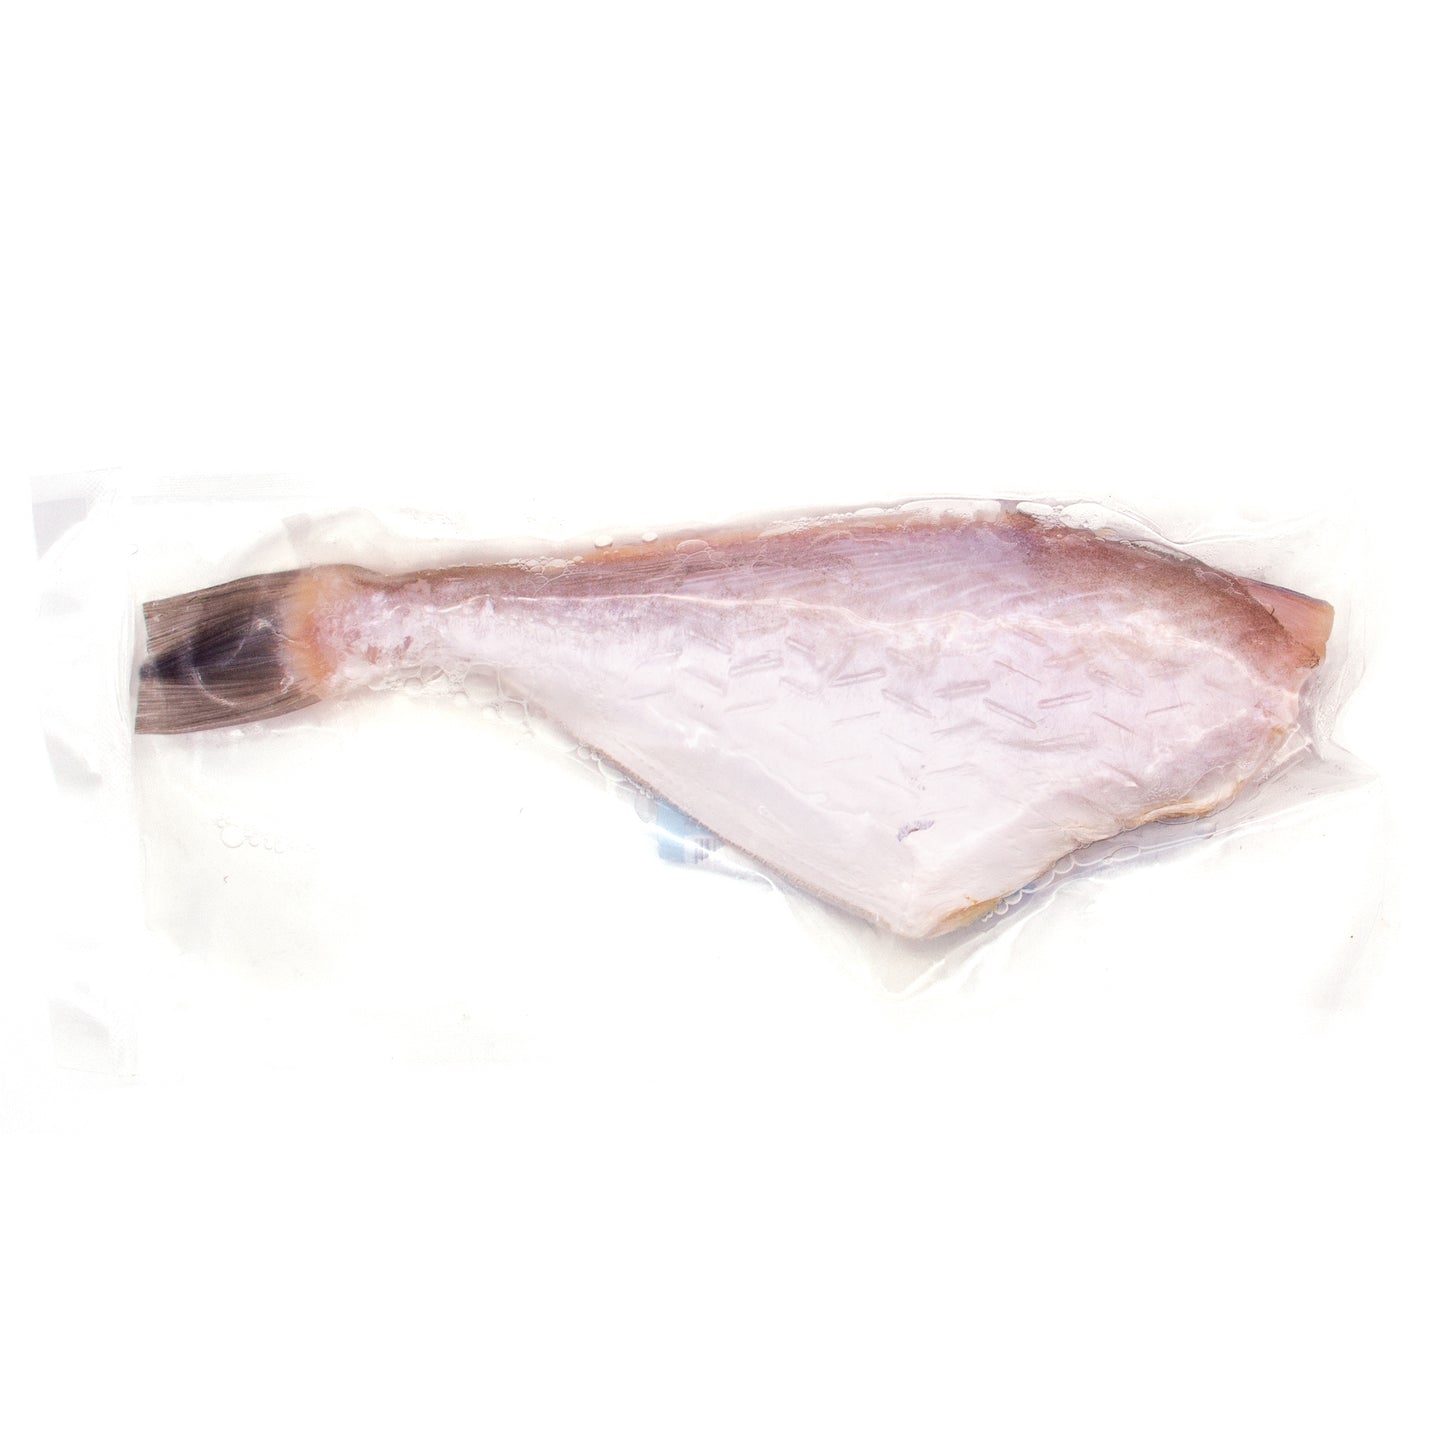 Leatherjacket Fish 马面鱼 (剥皮鱼)(17-21 OZ)